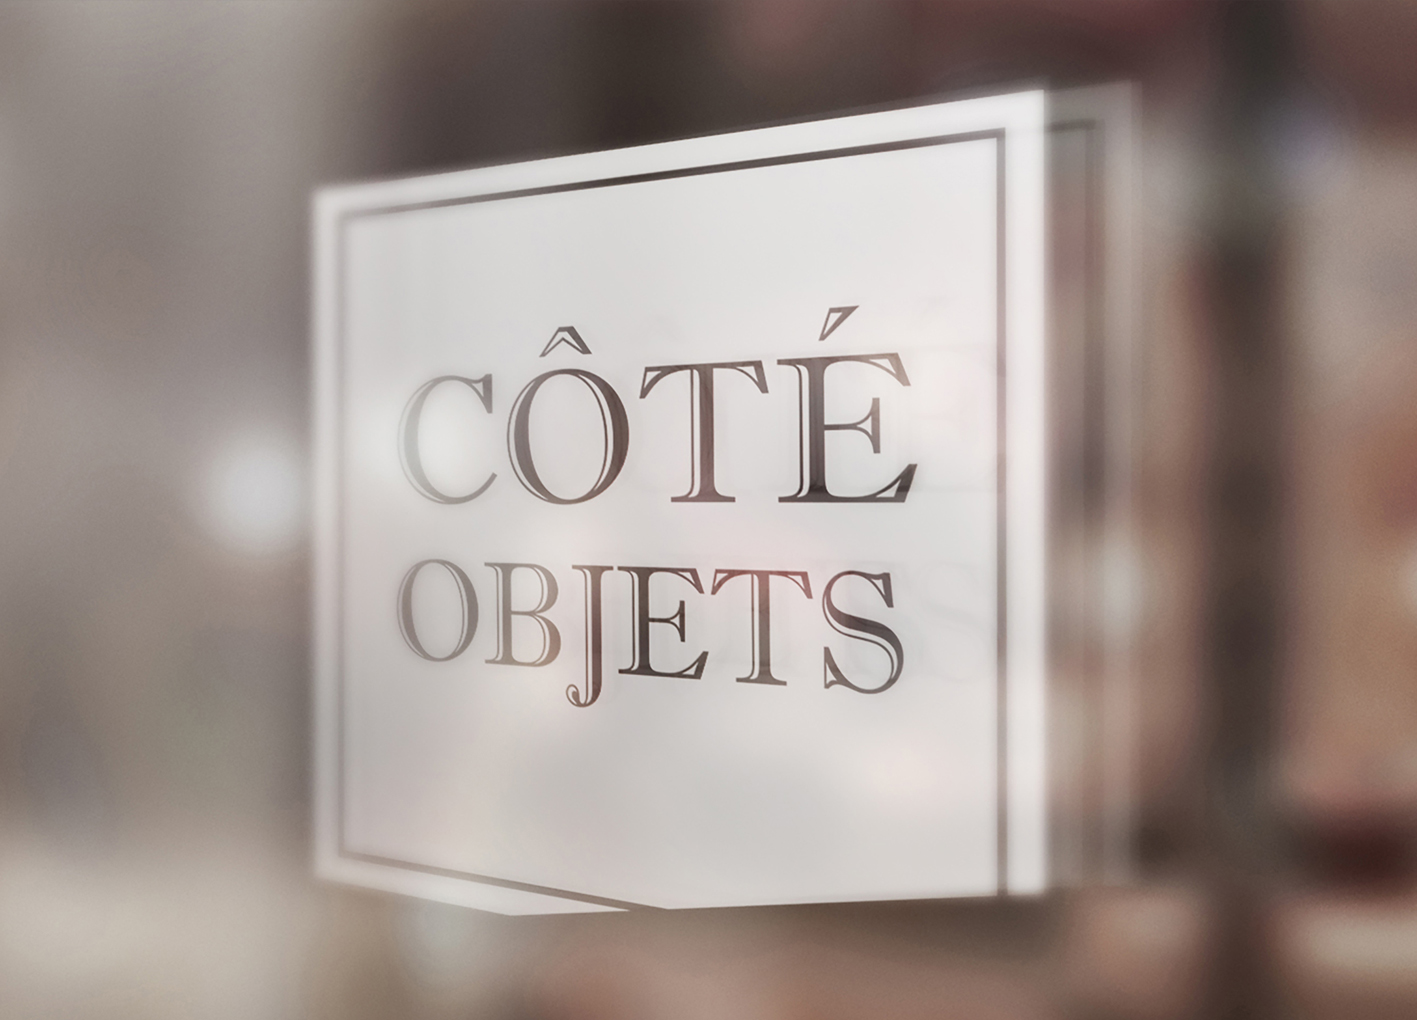 COTE OBJET Window Signage Mock Up 2020 - Côté objets